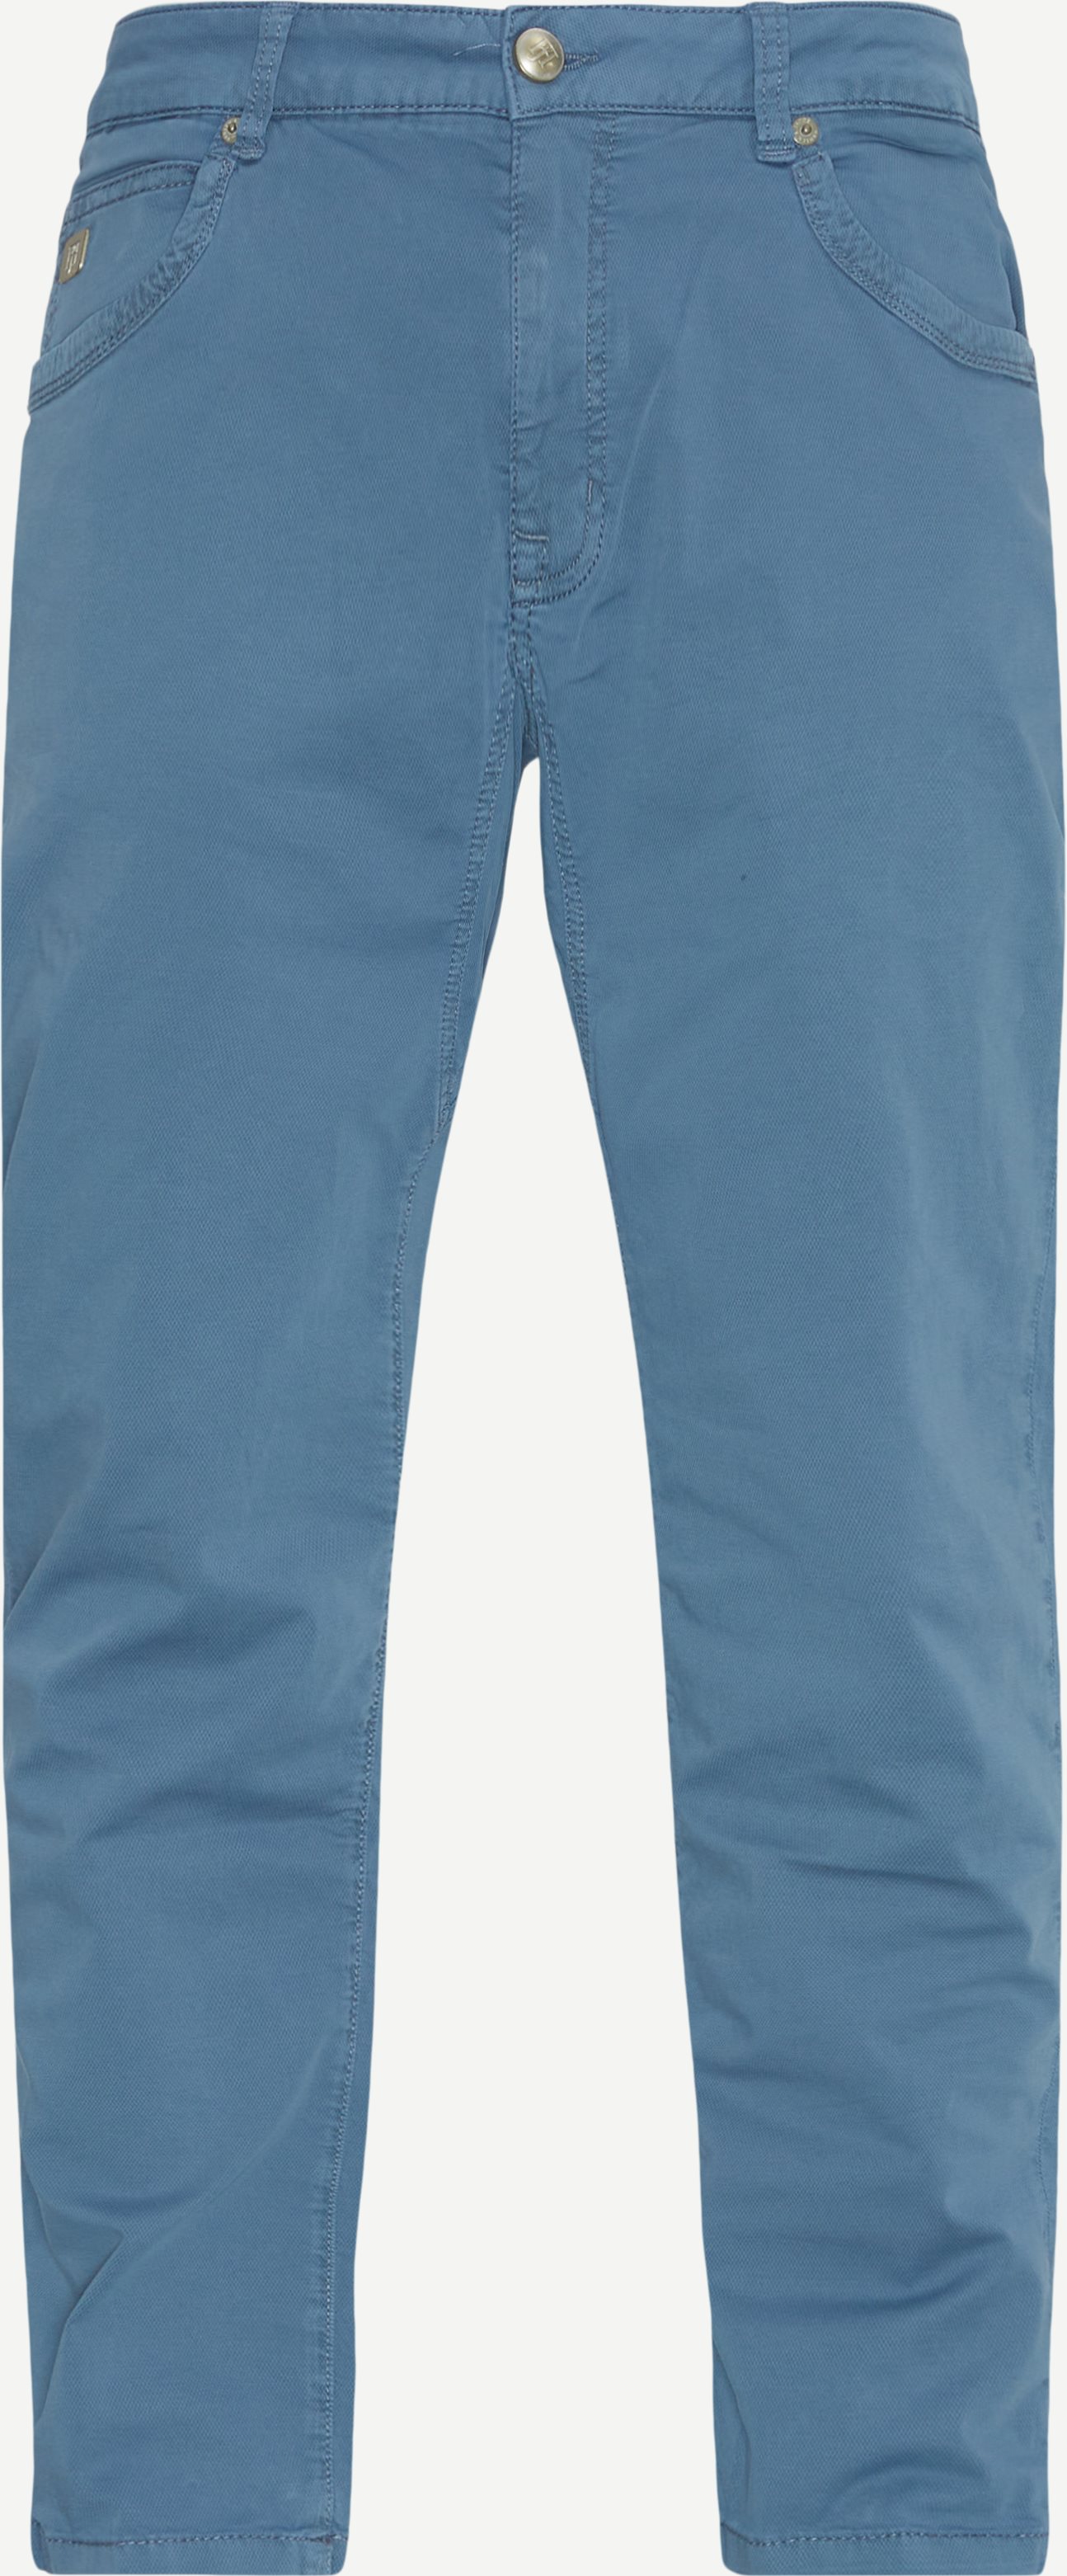 Hansen & Jacob Trousers 11612 5-PKT CUTN SEW BALI PRINT Blue